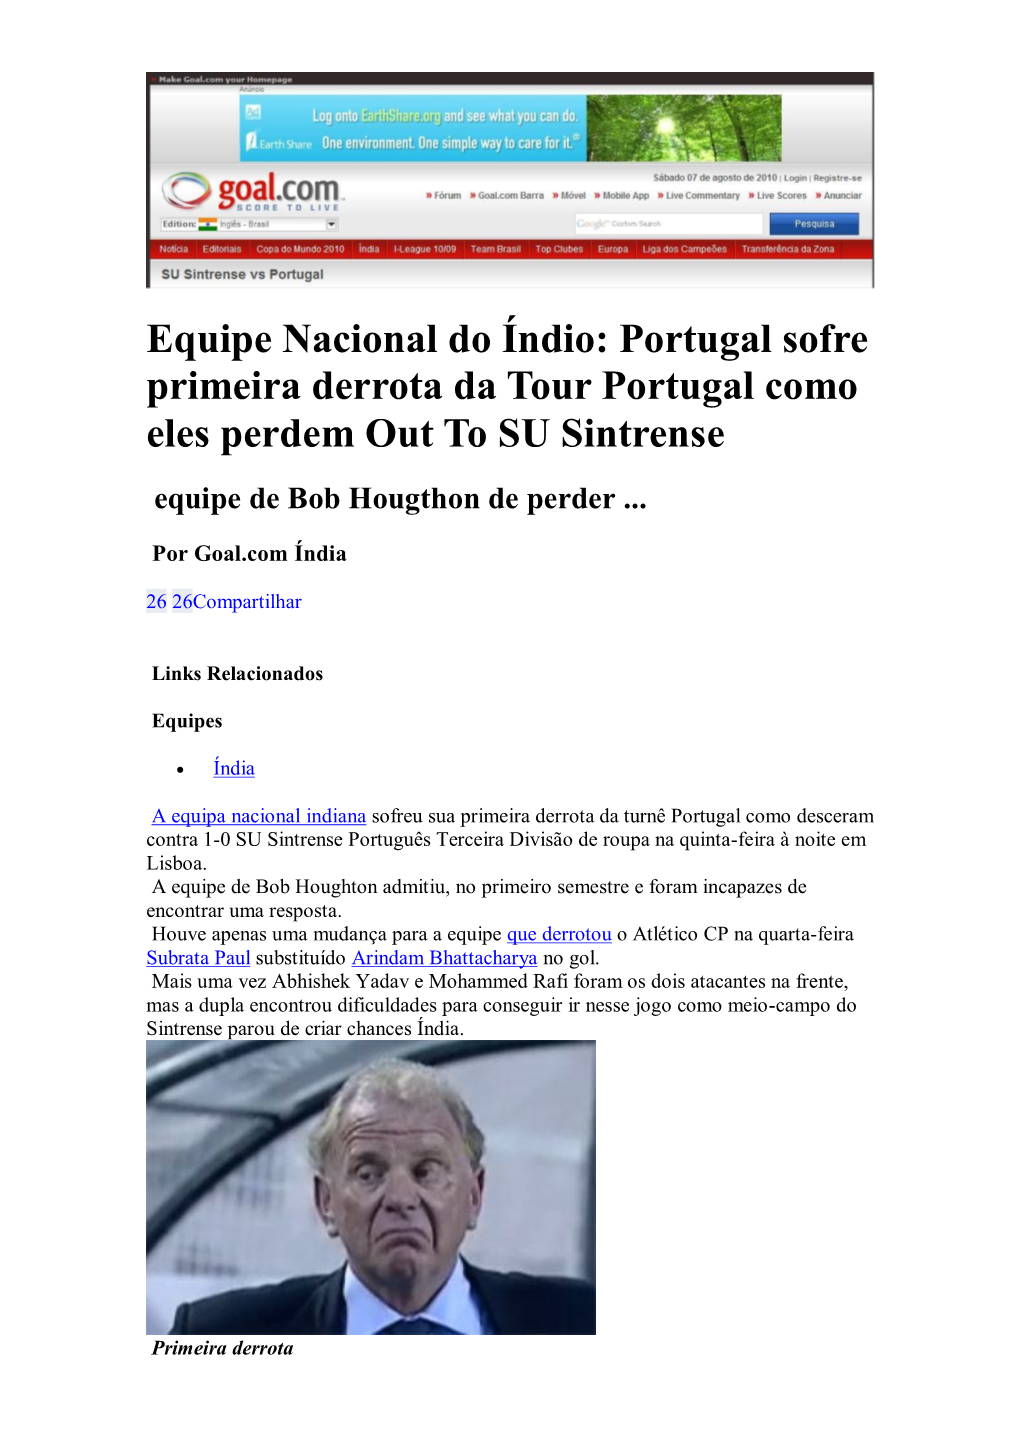 Equipe Nacional Do Índio: Portugal Sofre Primeira Derrota Da Tour Portugal Como Eles Perdem out to SU Sintrense Equipe De Bob Hougthon De Perder